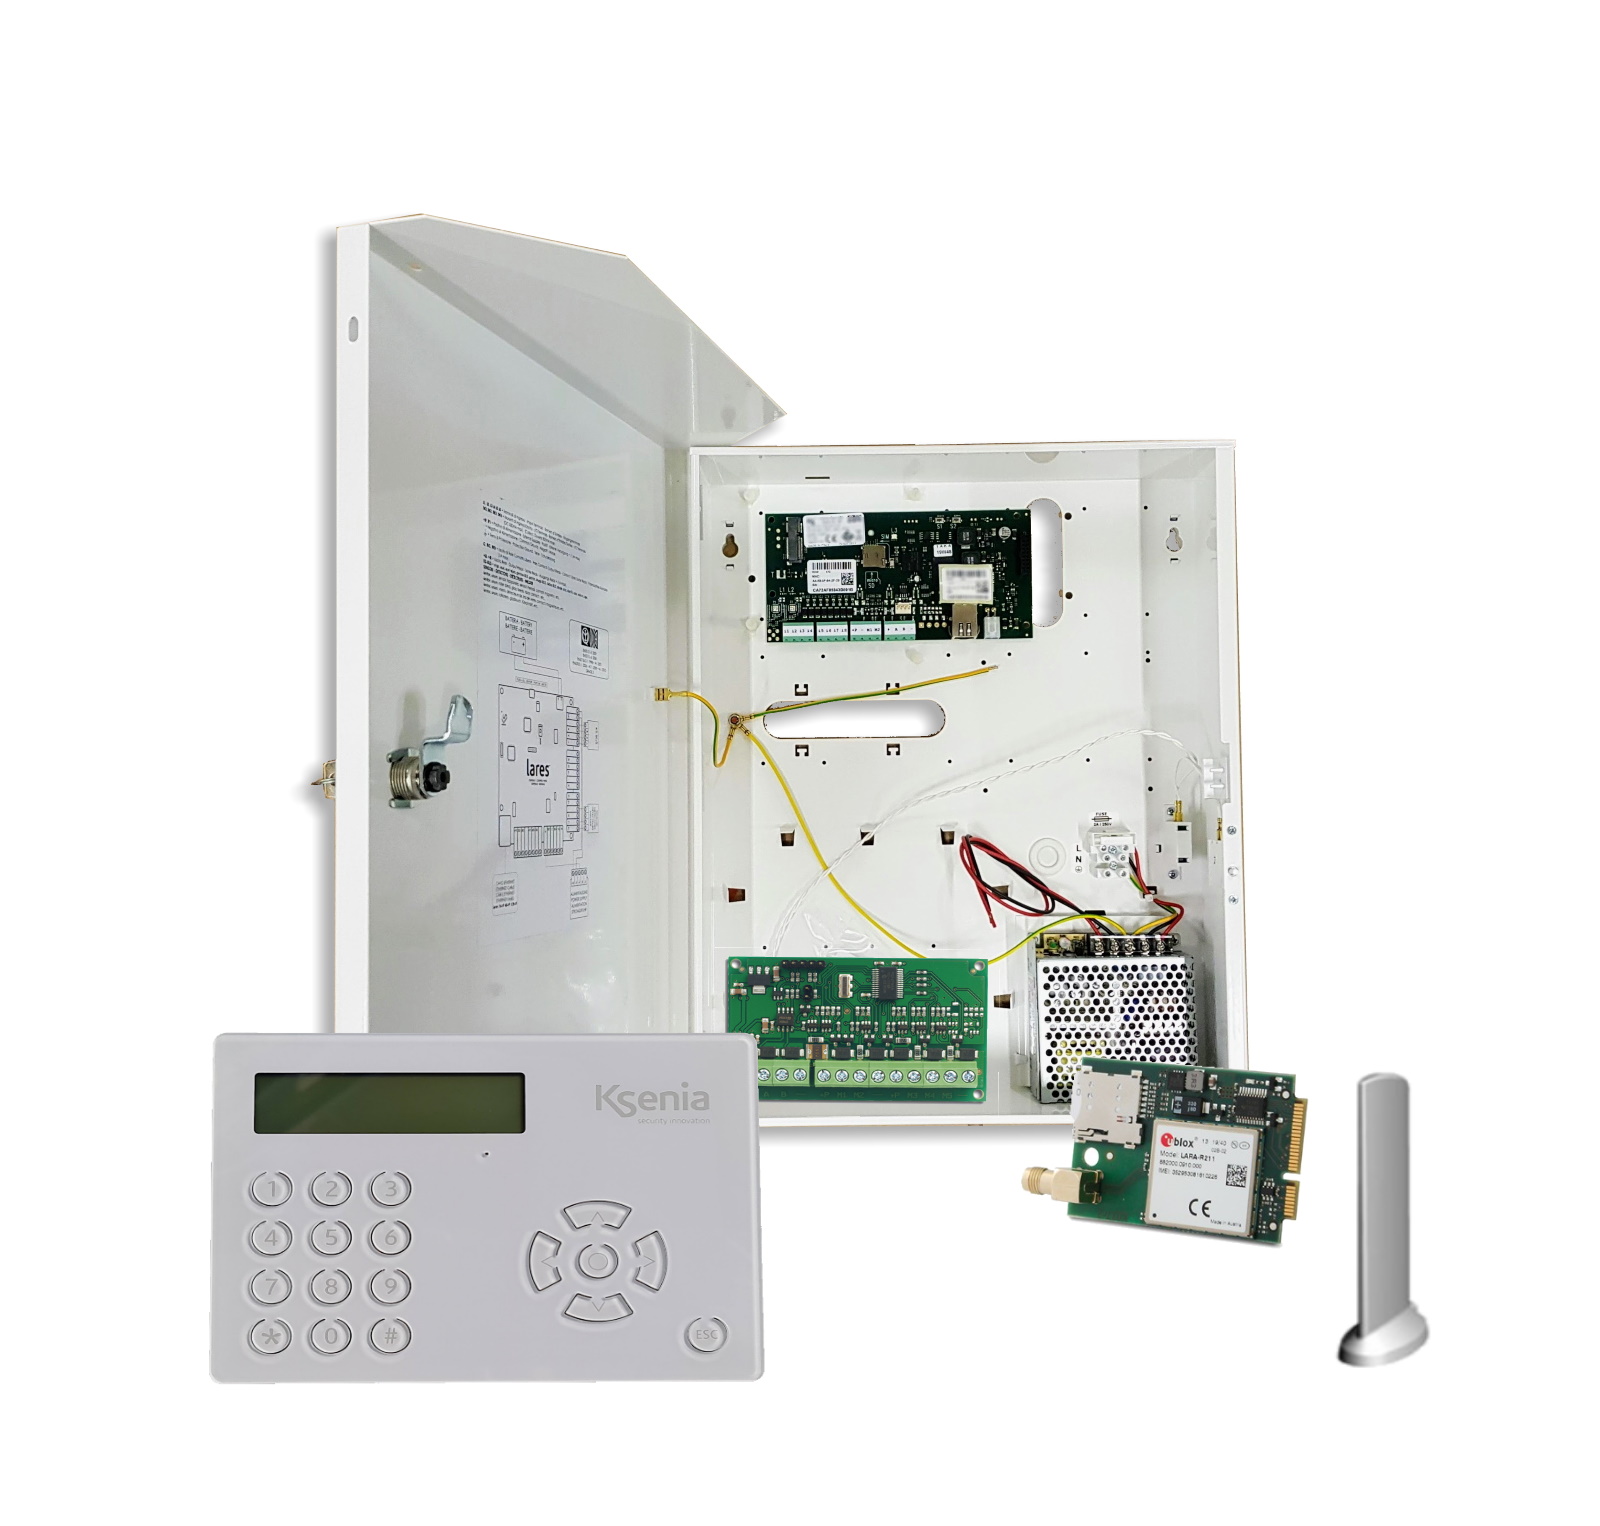 10020022 Kit Ksenia, Centrale 10-40 grand boîtier métallique, clavier sensitif blanc,module d'extension, kit 4G (carte + antenne)